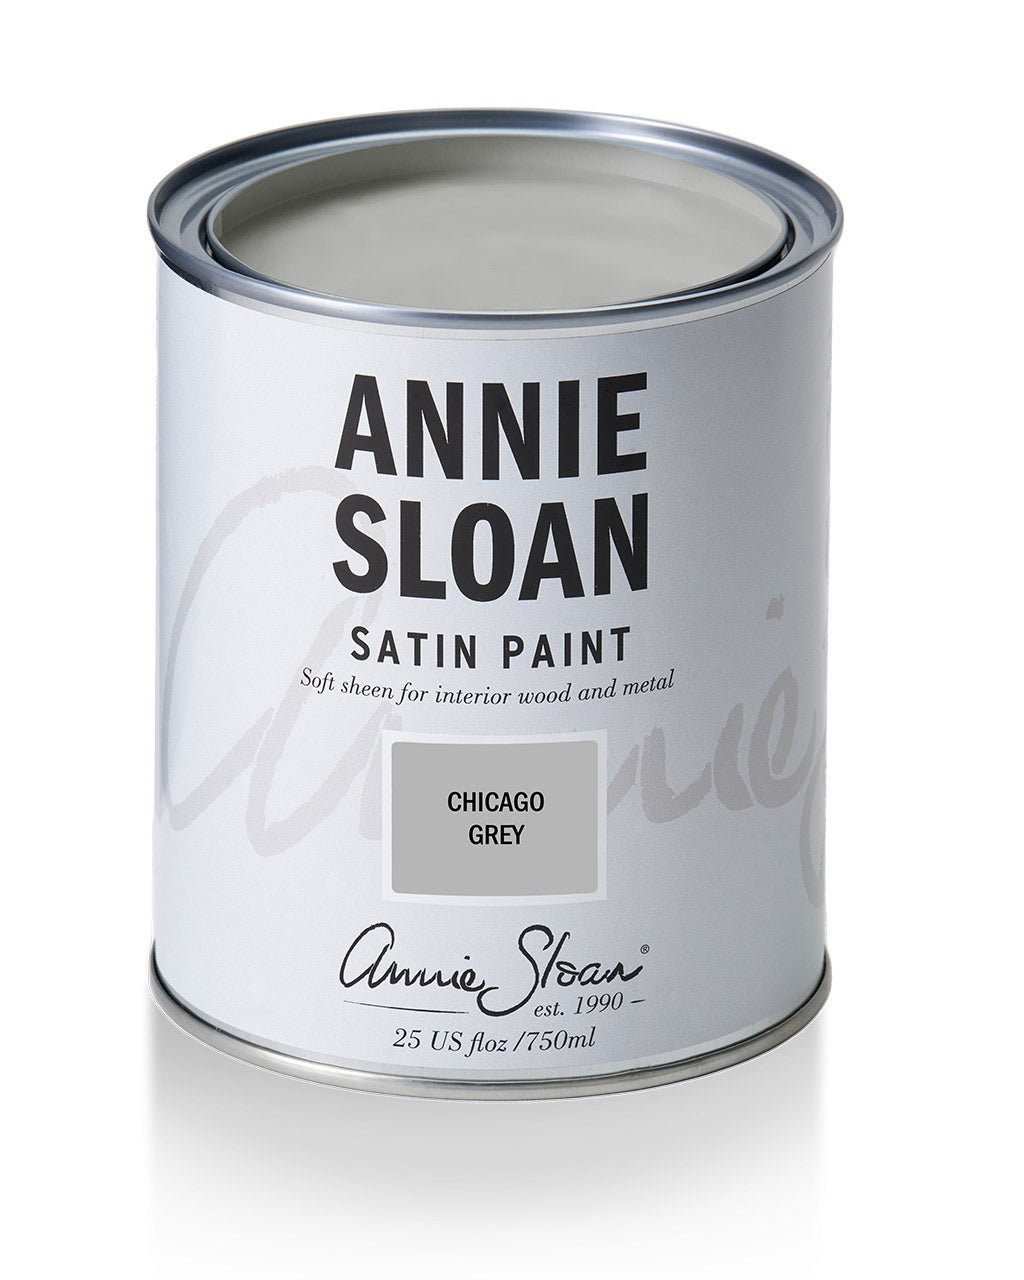 Chicago Grey Annie Sloan Satin Paint